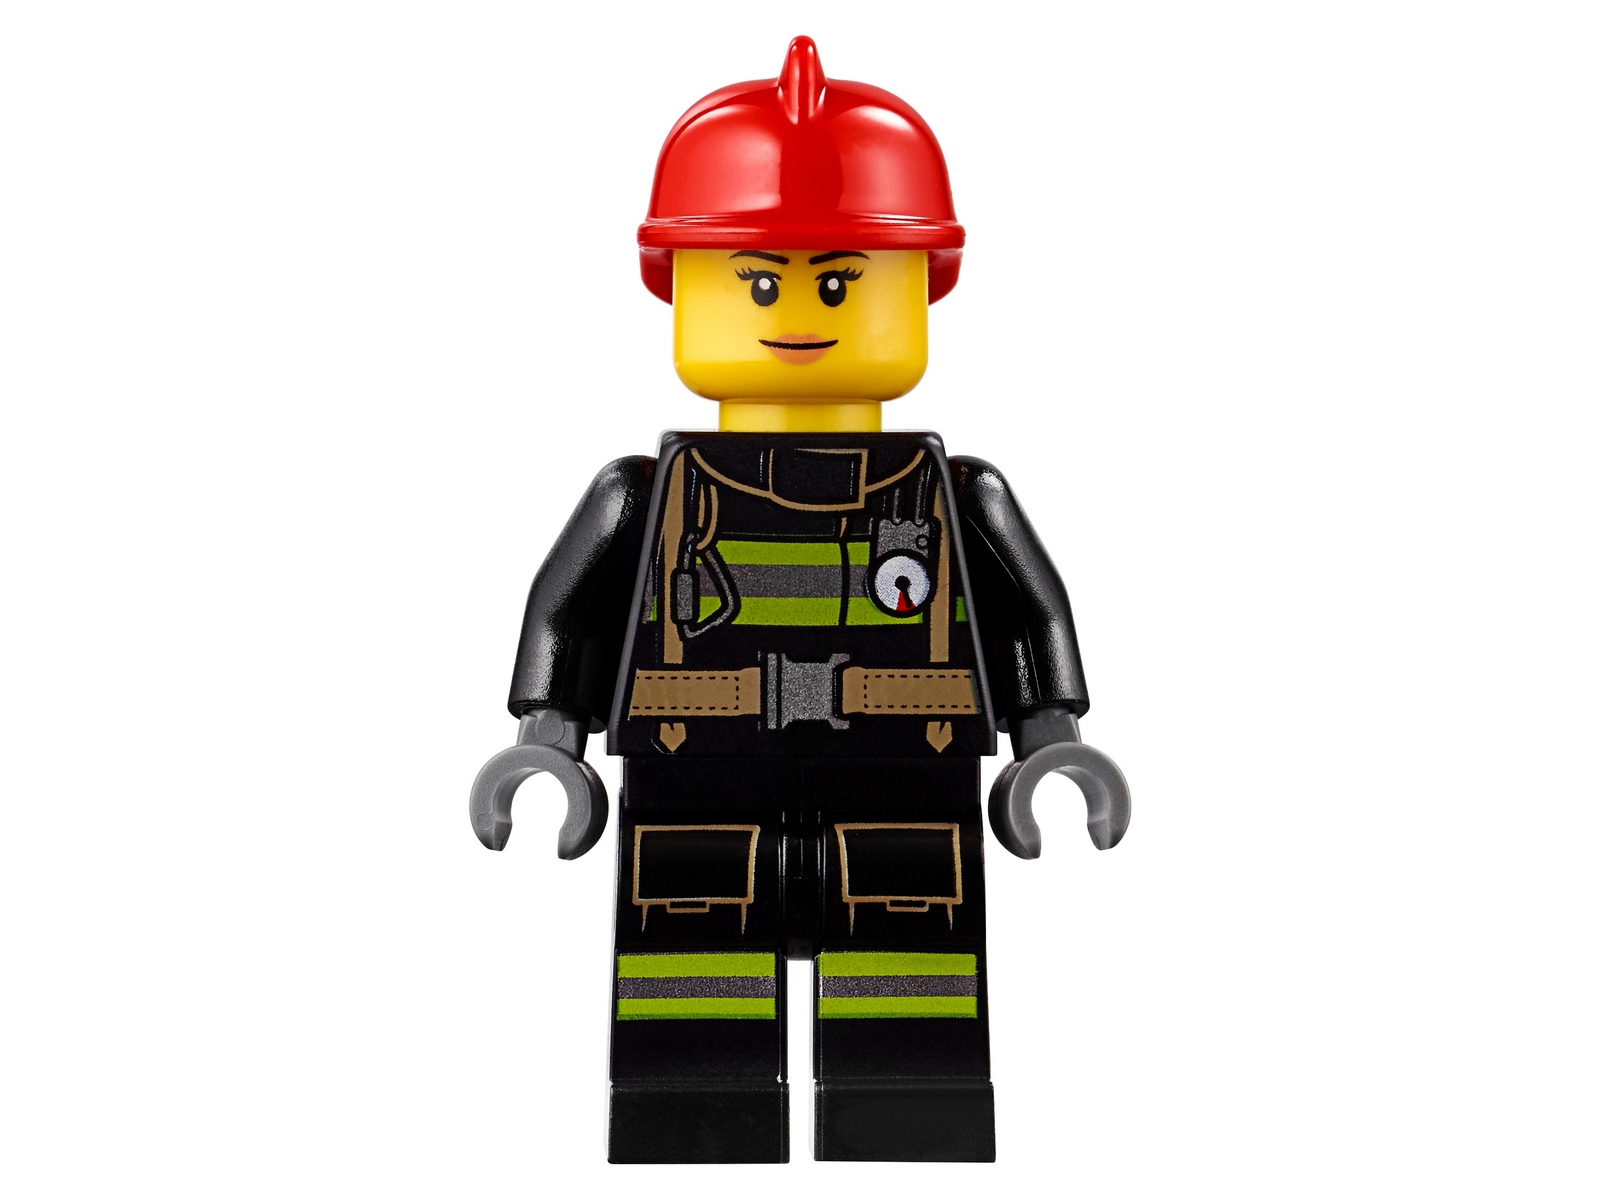 Конструктор LEGO City Fire «Пожар в бургер-кафе» 60214 / 327 деталей